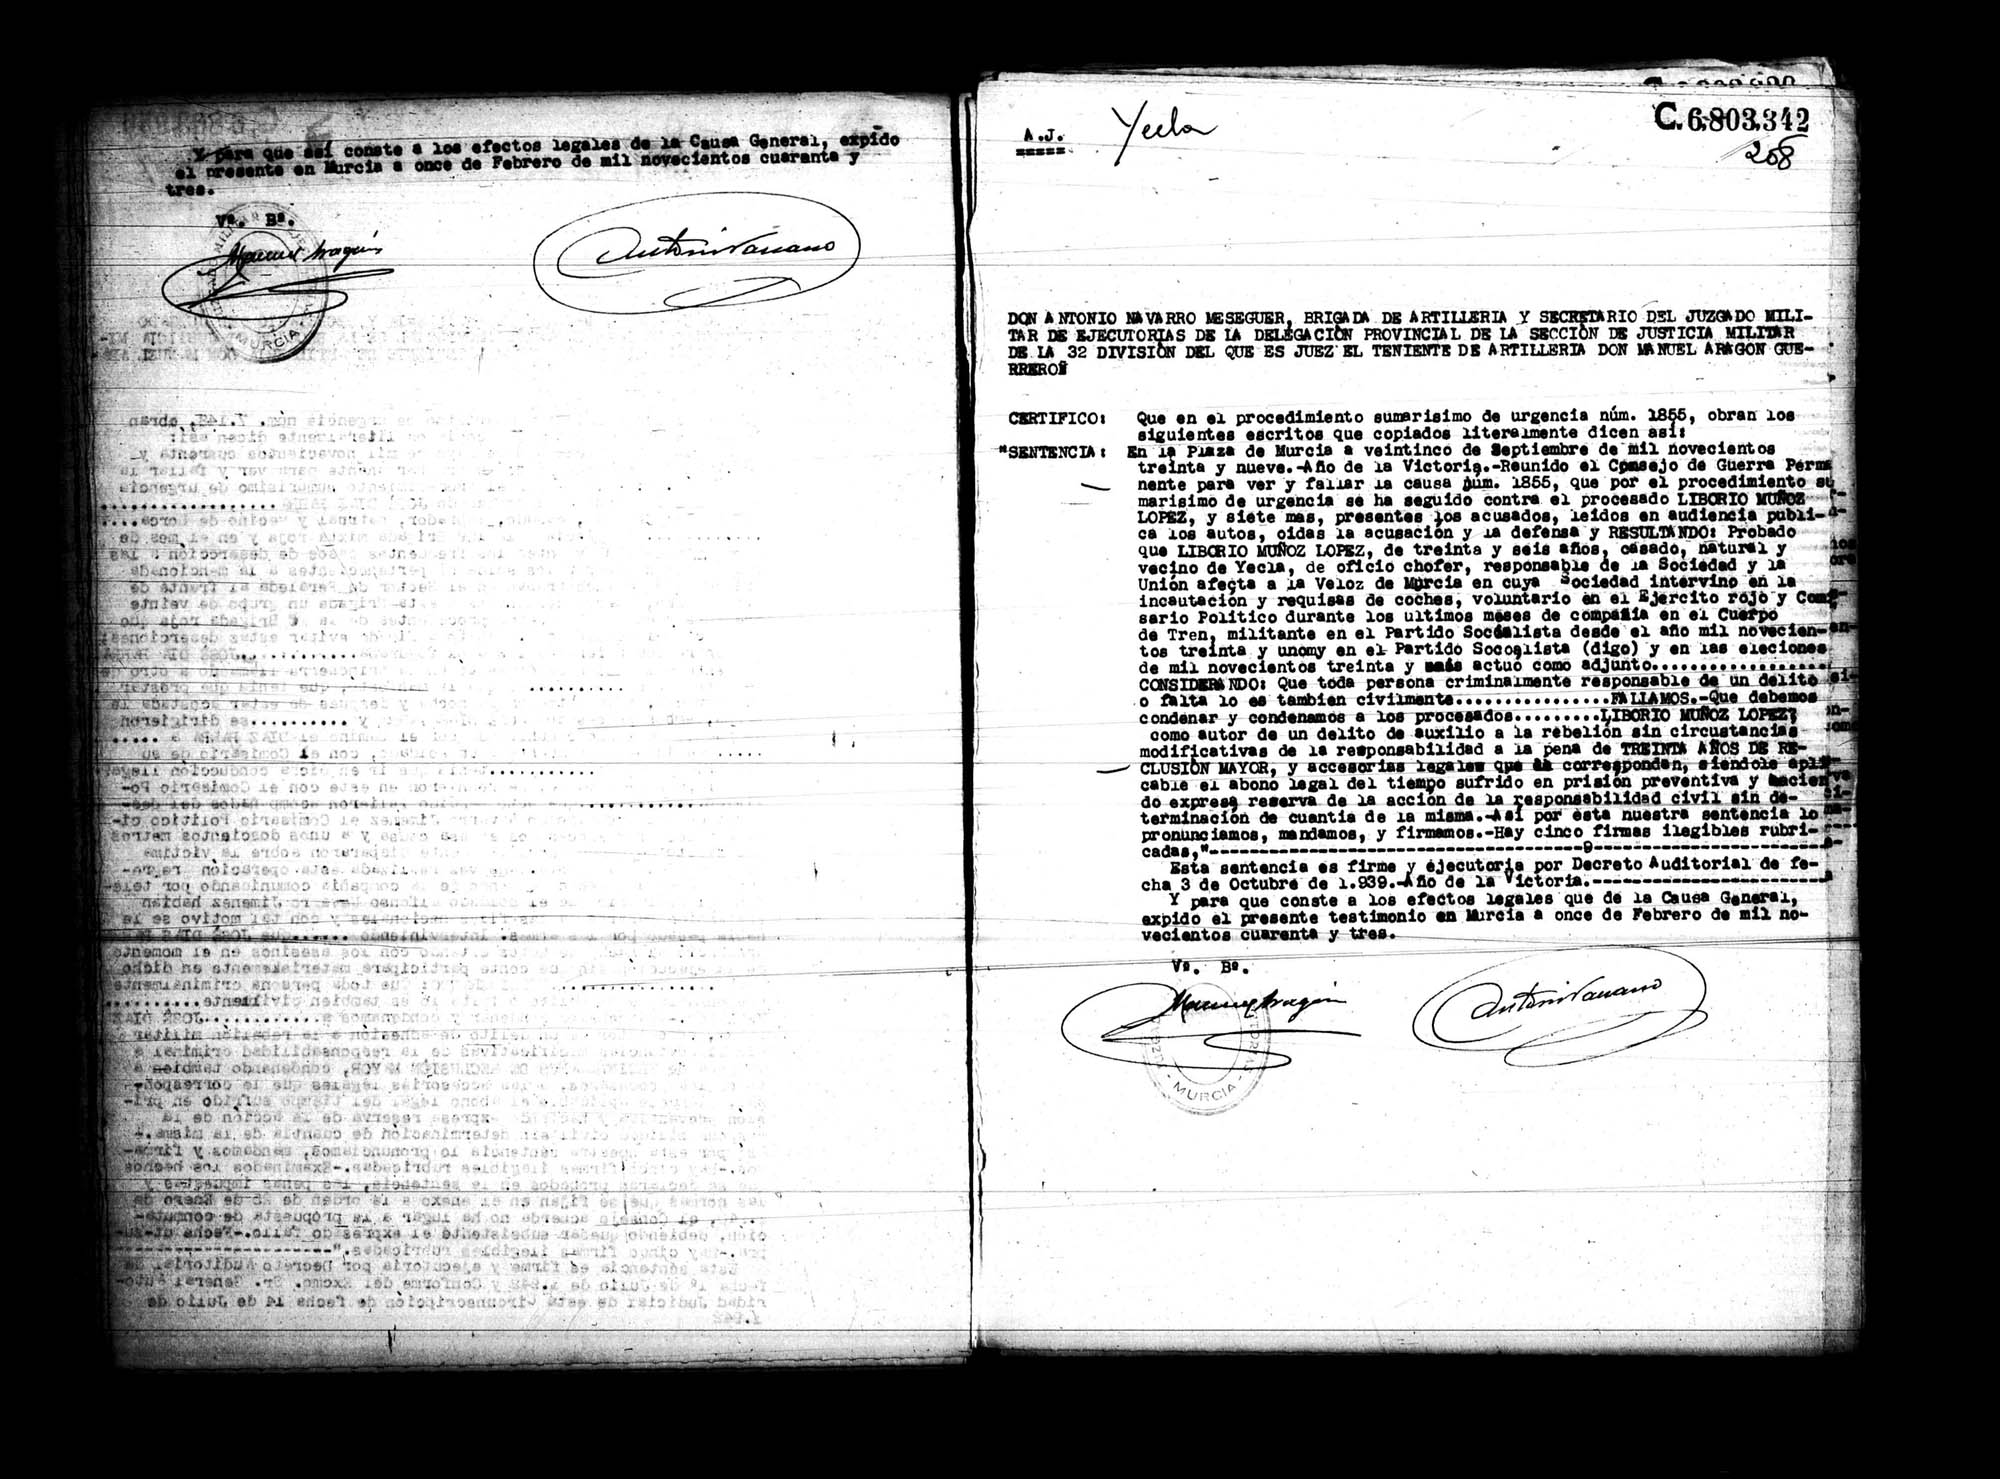 Certificado de la sentencia pronunciada contra José Díaz Parra, causa 7148, el 4 de mayo de 1492 en Murcia.